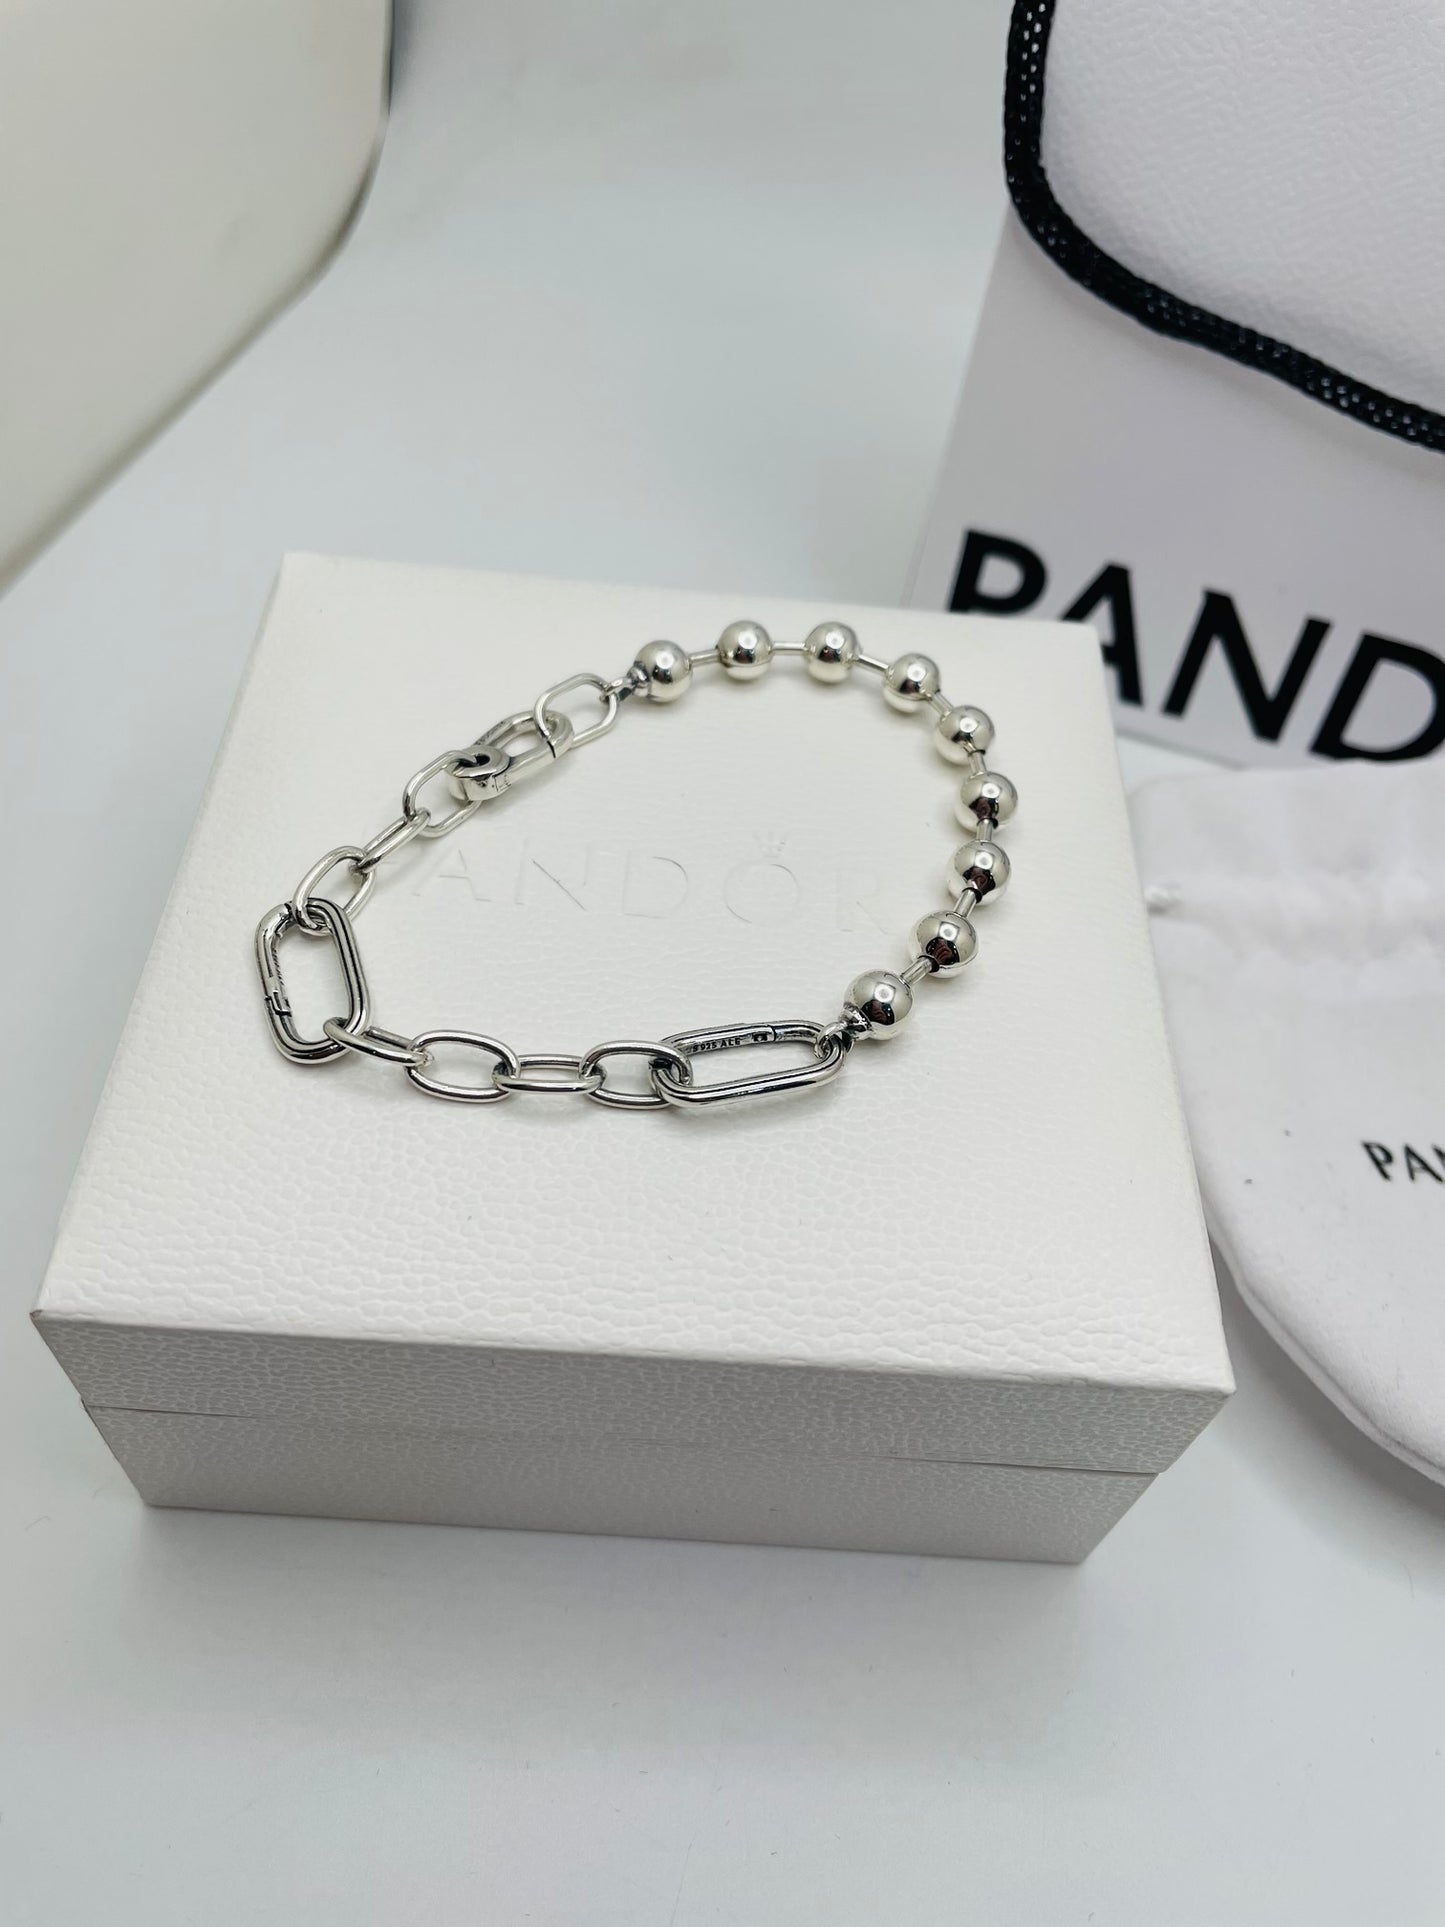 Pandora bracelet